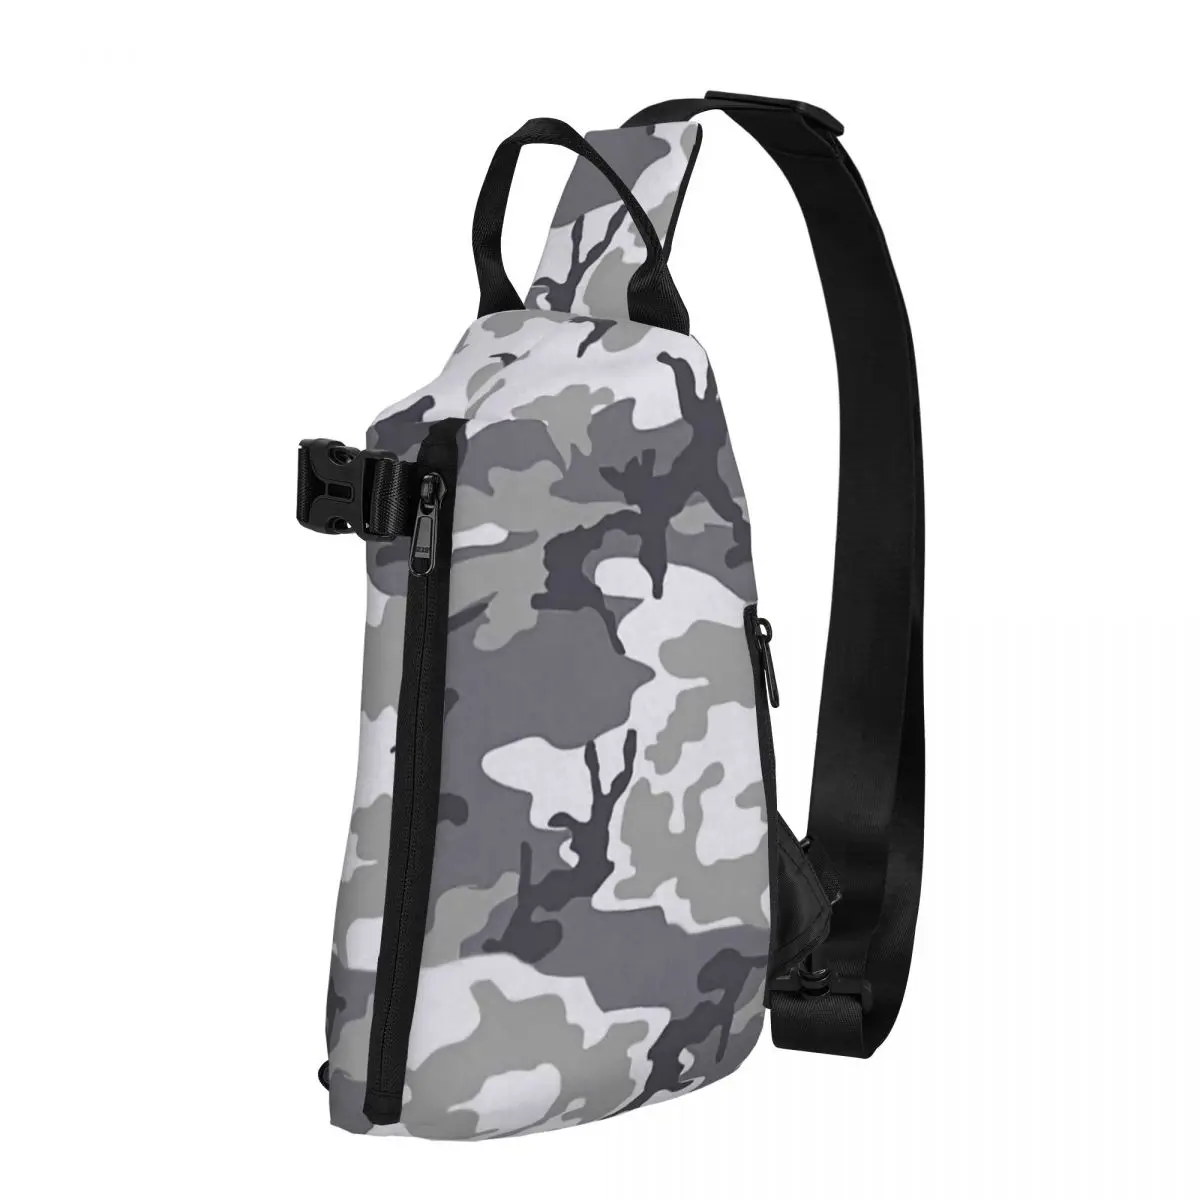 Urban Camo Shoulder Bags Chest Cross Chest Bag Diagonally Casual Messenger Bag Travel Handbag